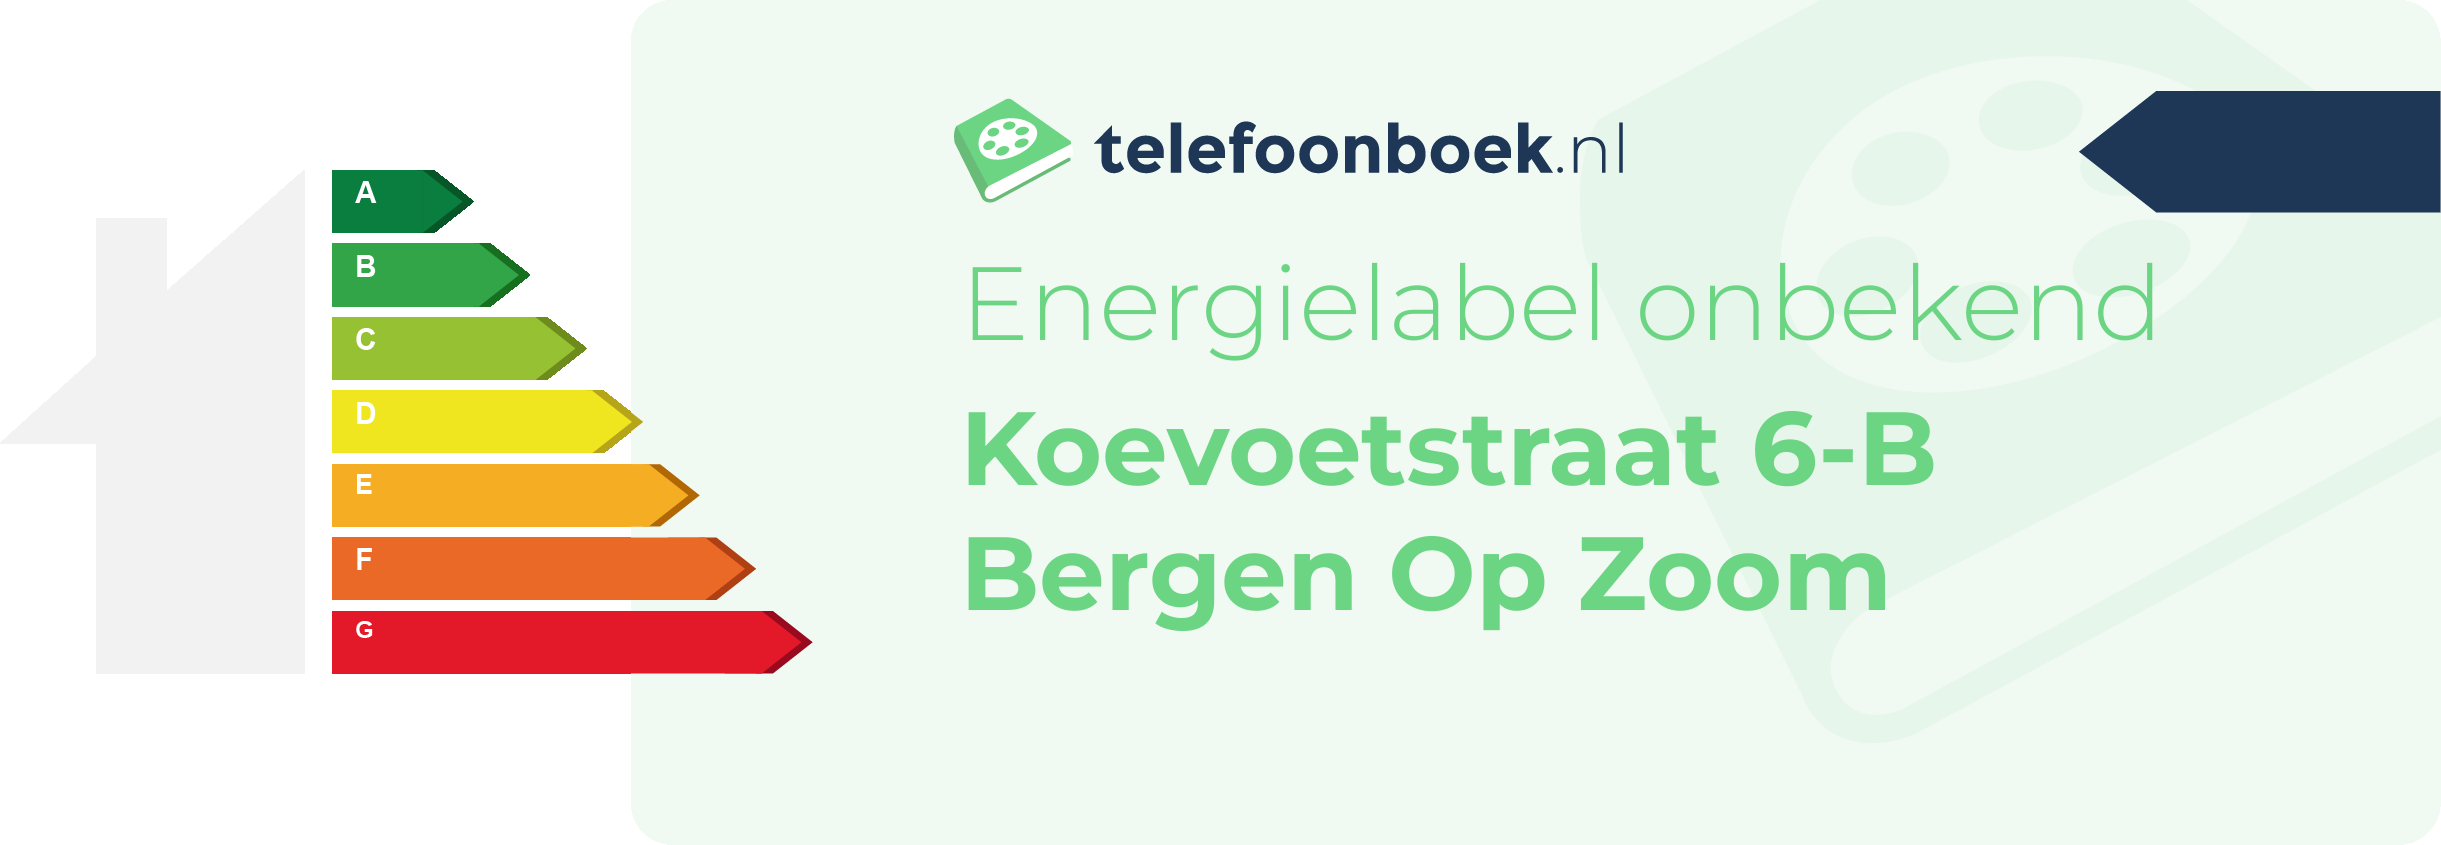 Energielabel Koevoetstraat 6-B Bergen Op Zoom